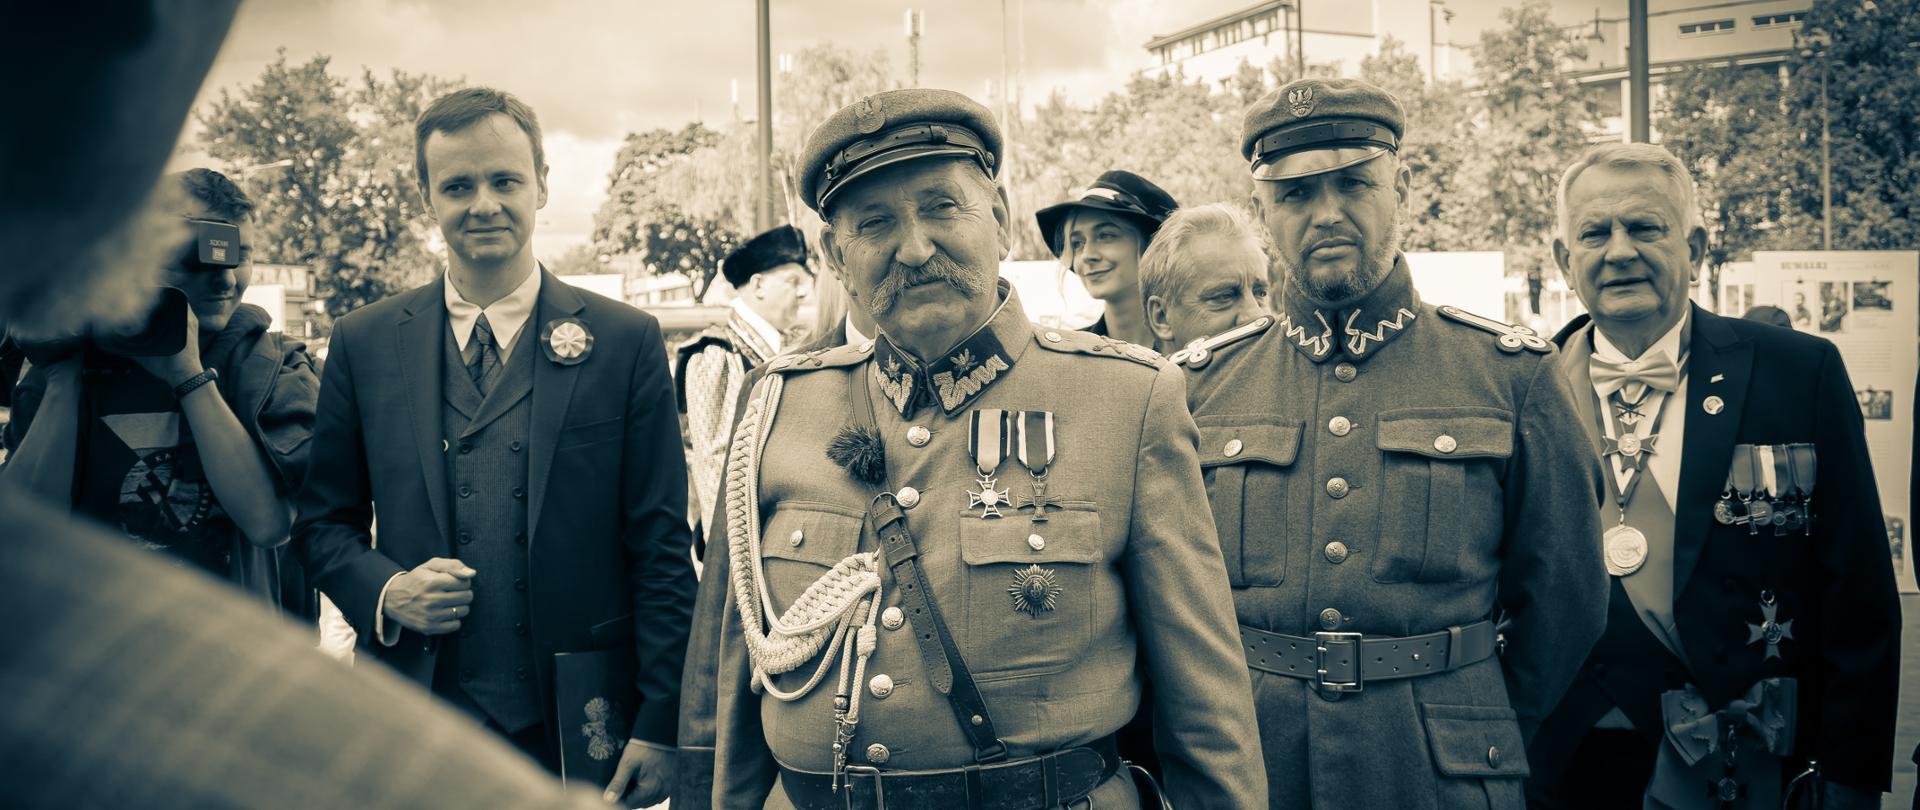 Setna rocznica nadania honorowego obywatelstwa Białegostoku marszałkowi Józefowi Piłsudskiemu, fot. B. Stasiak